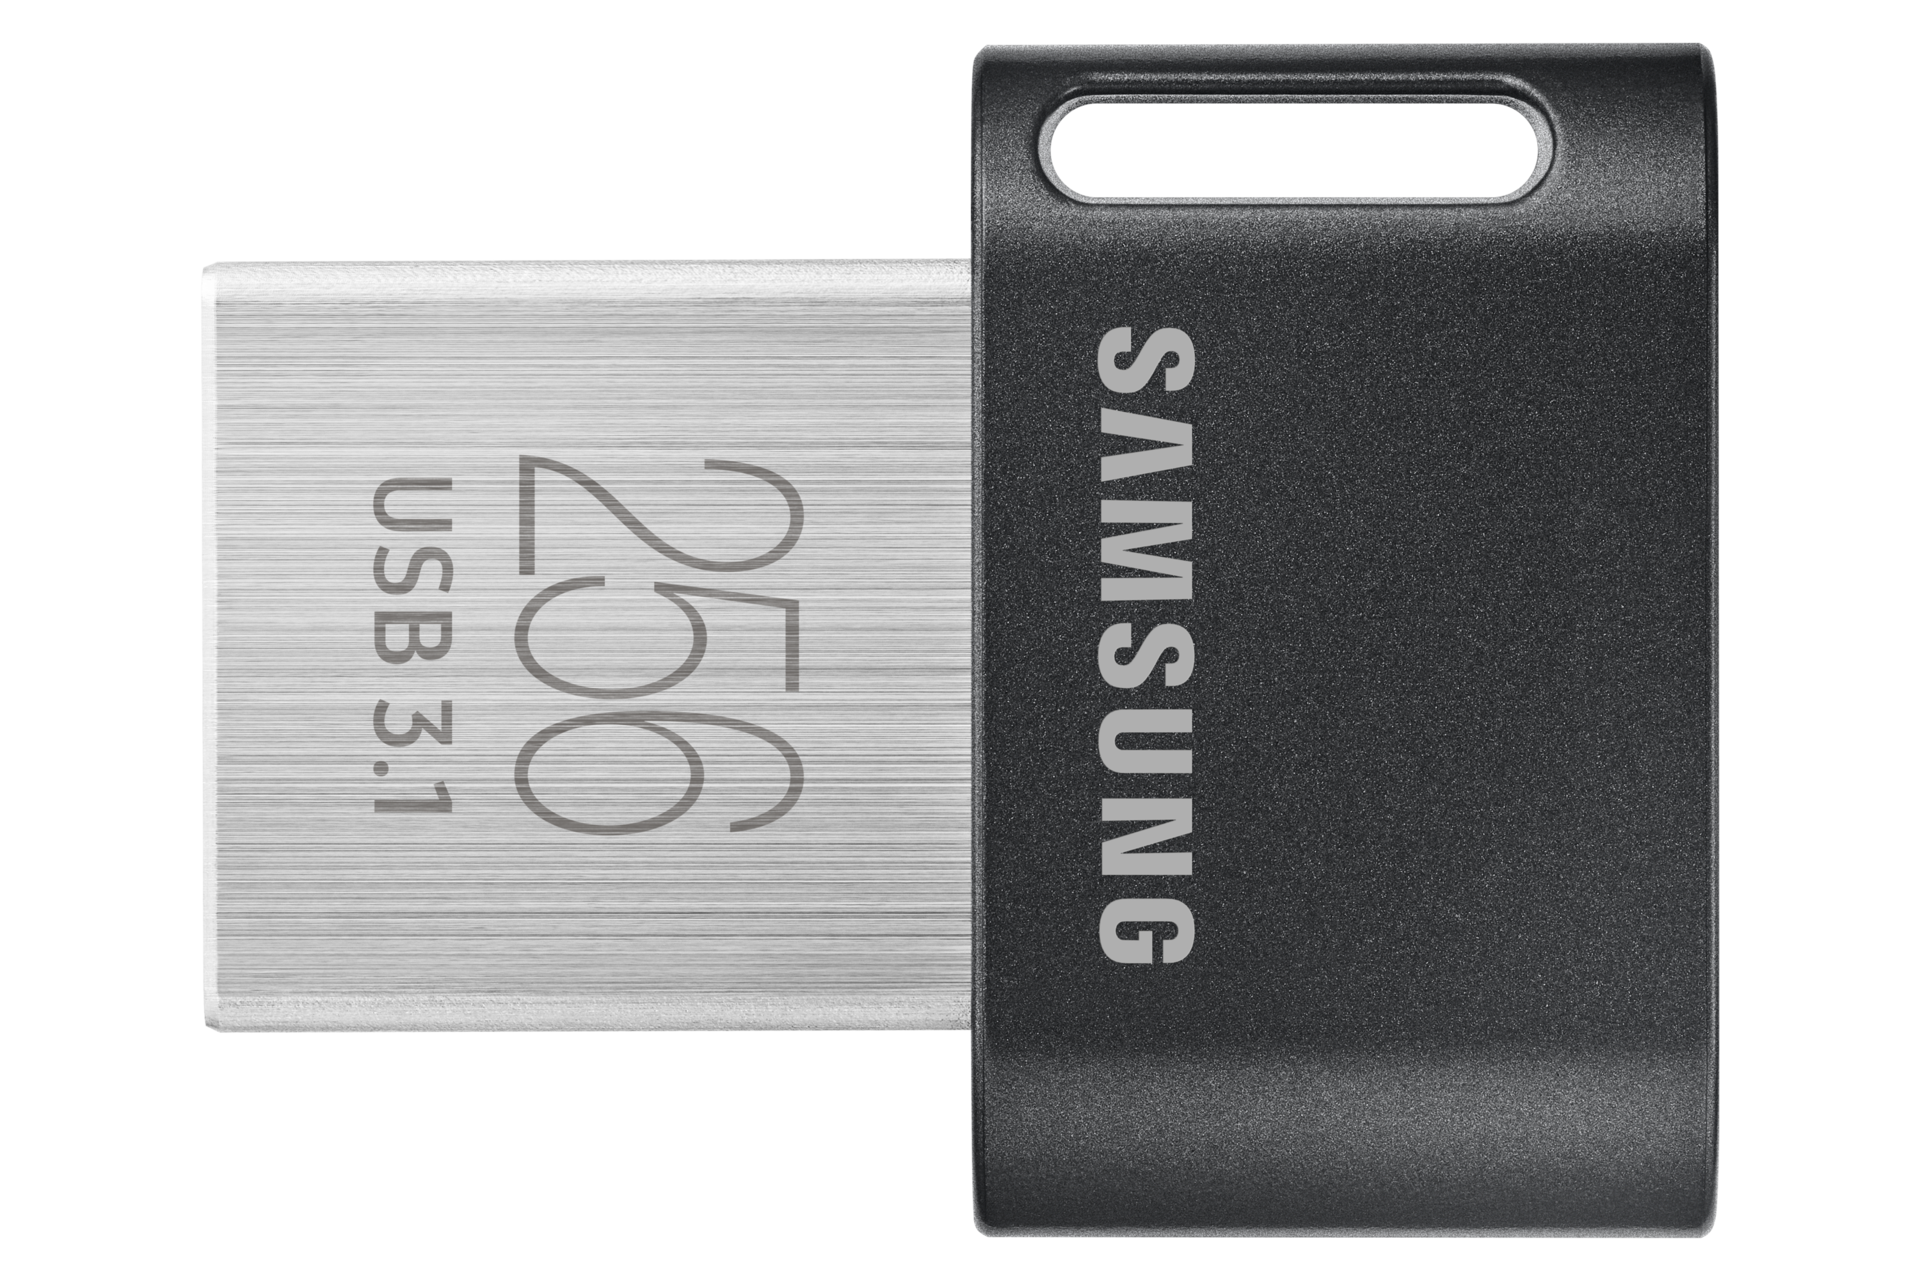 MUF-256AB/EU FIT Plus 256GB USB 3.1 Flash Drive Samsung UK